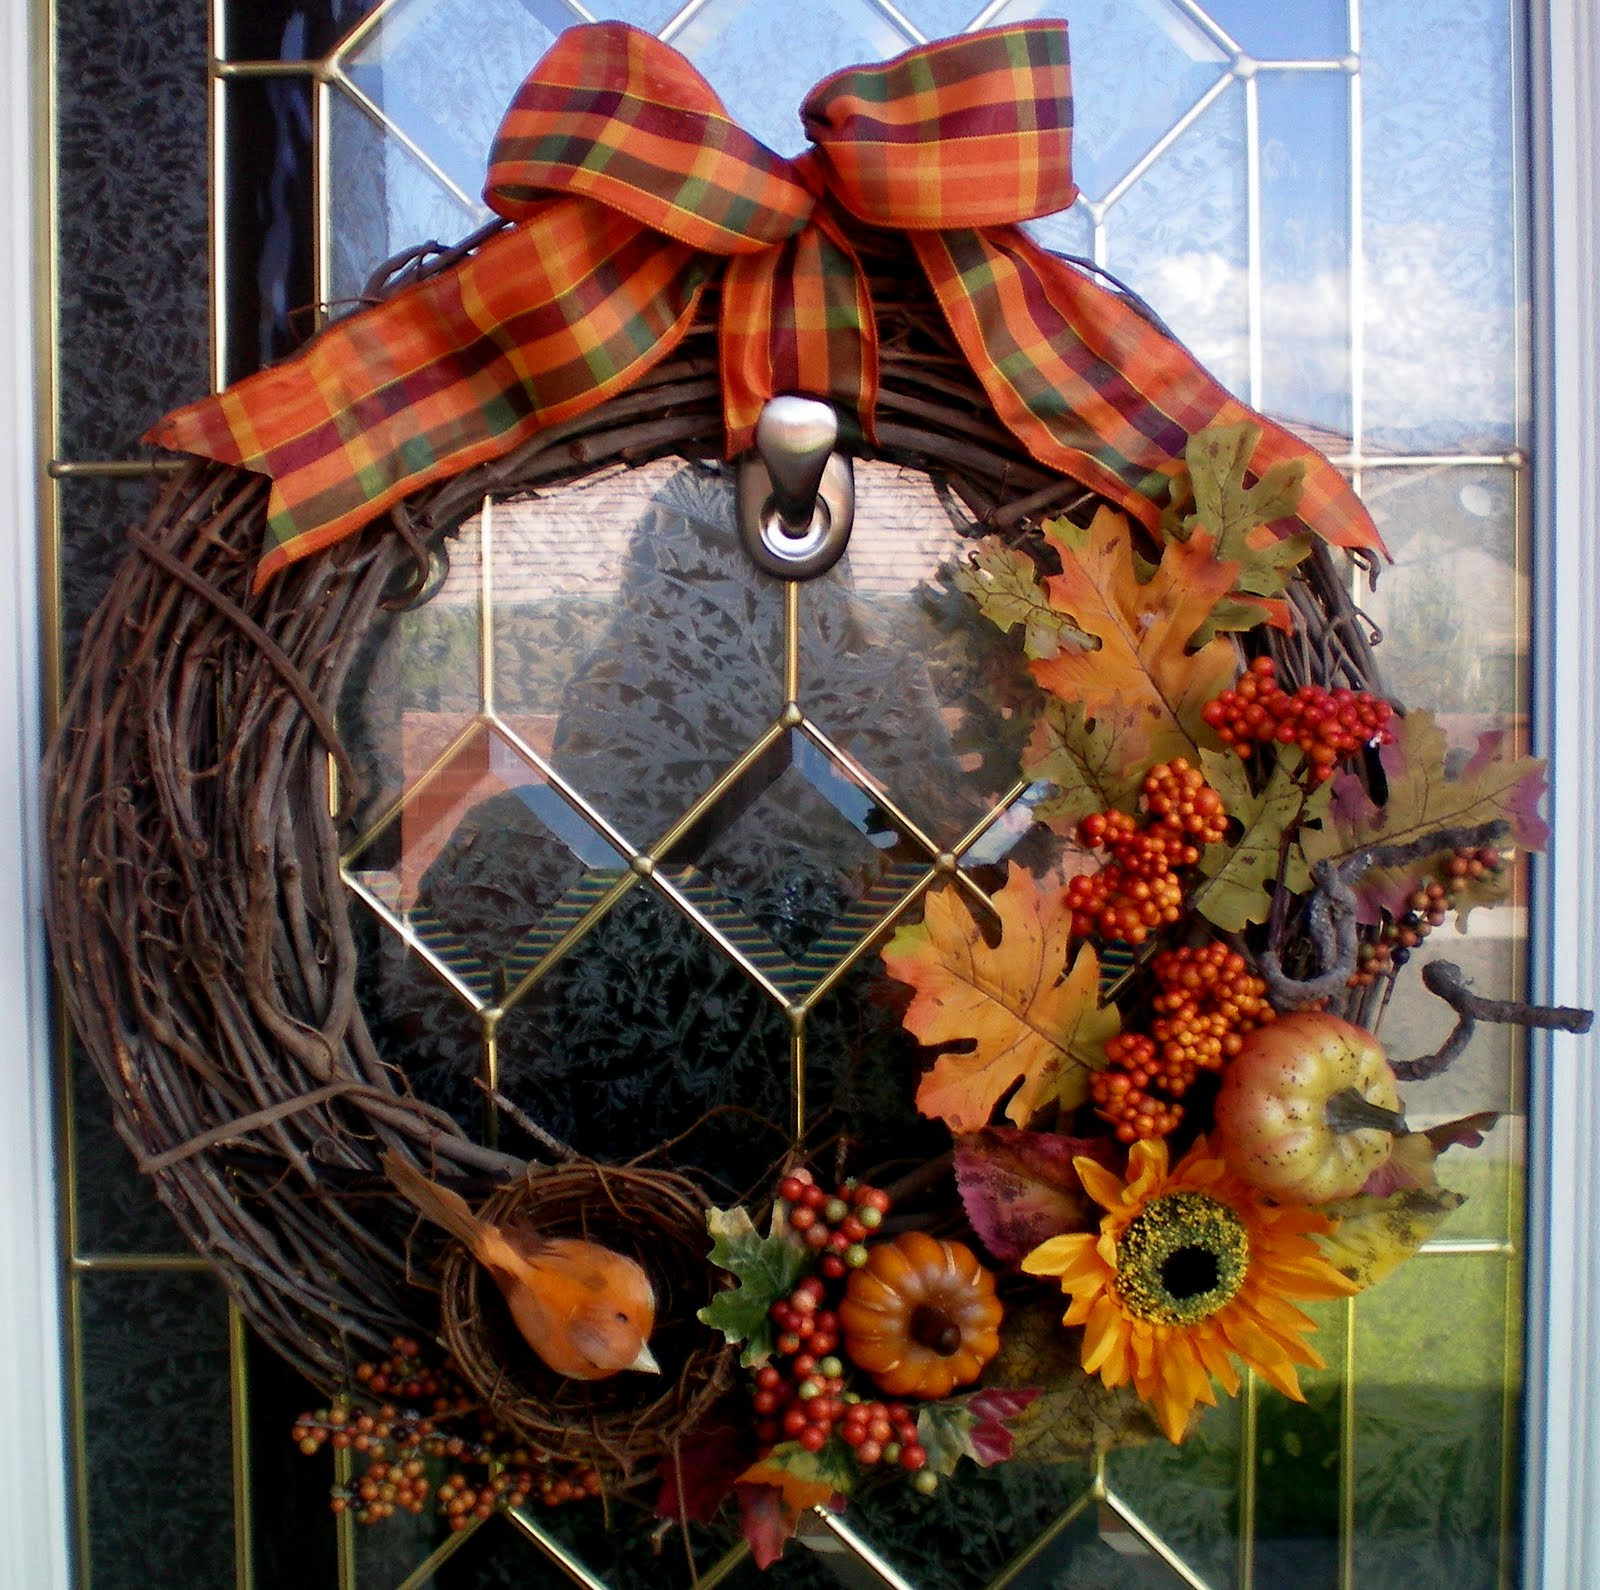 Best ideas about DIY Fall Wreath
. Save or Pin DIY FALL WREATH Craft O Maniac Now.